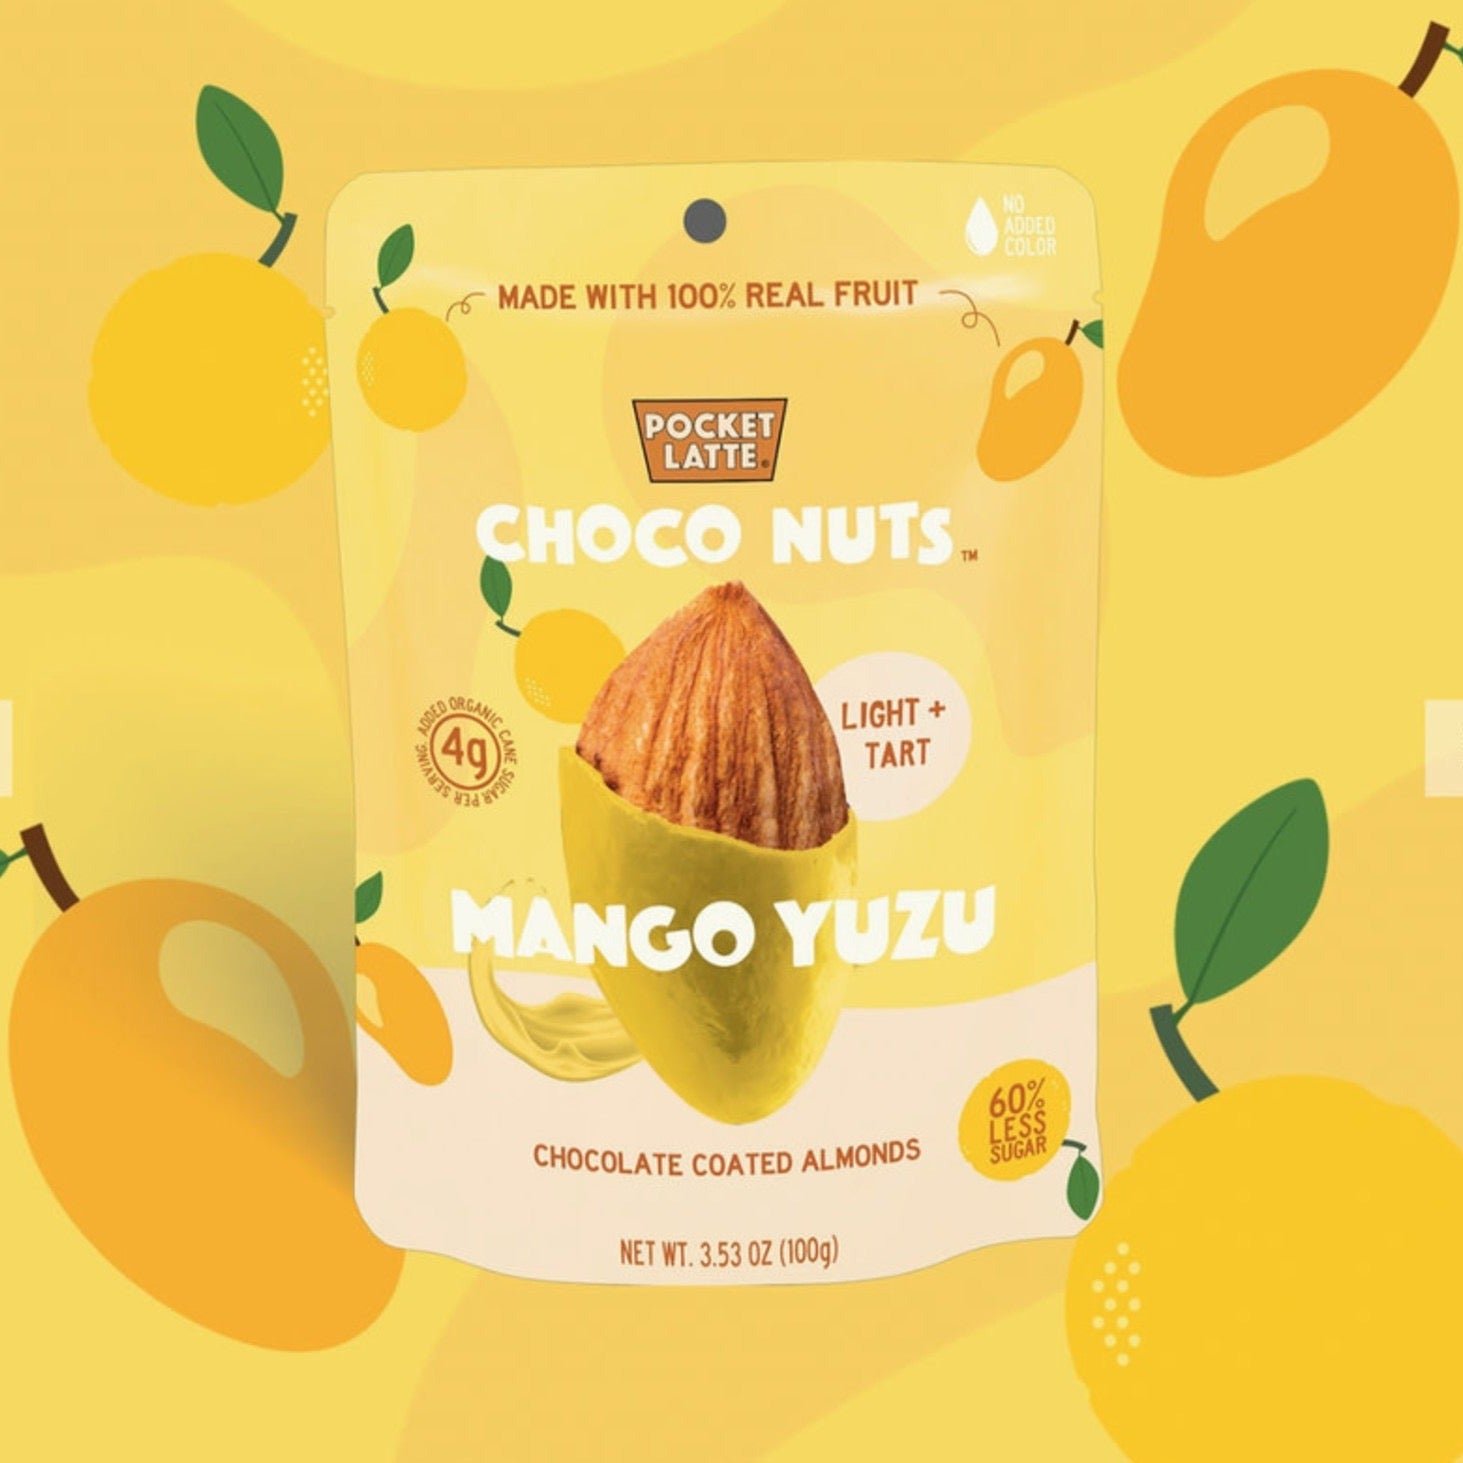 Pocket Latte Choco Nuts - Mango Yuzu